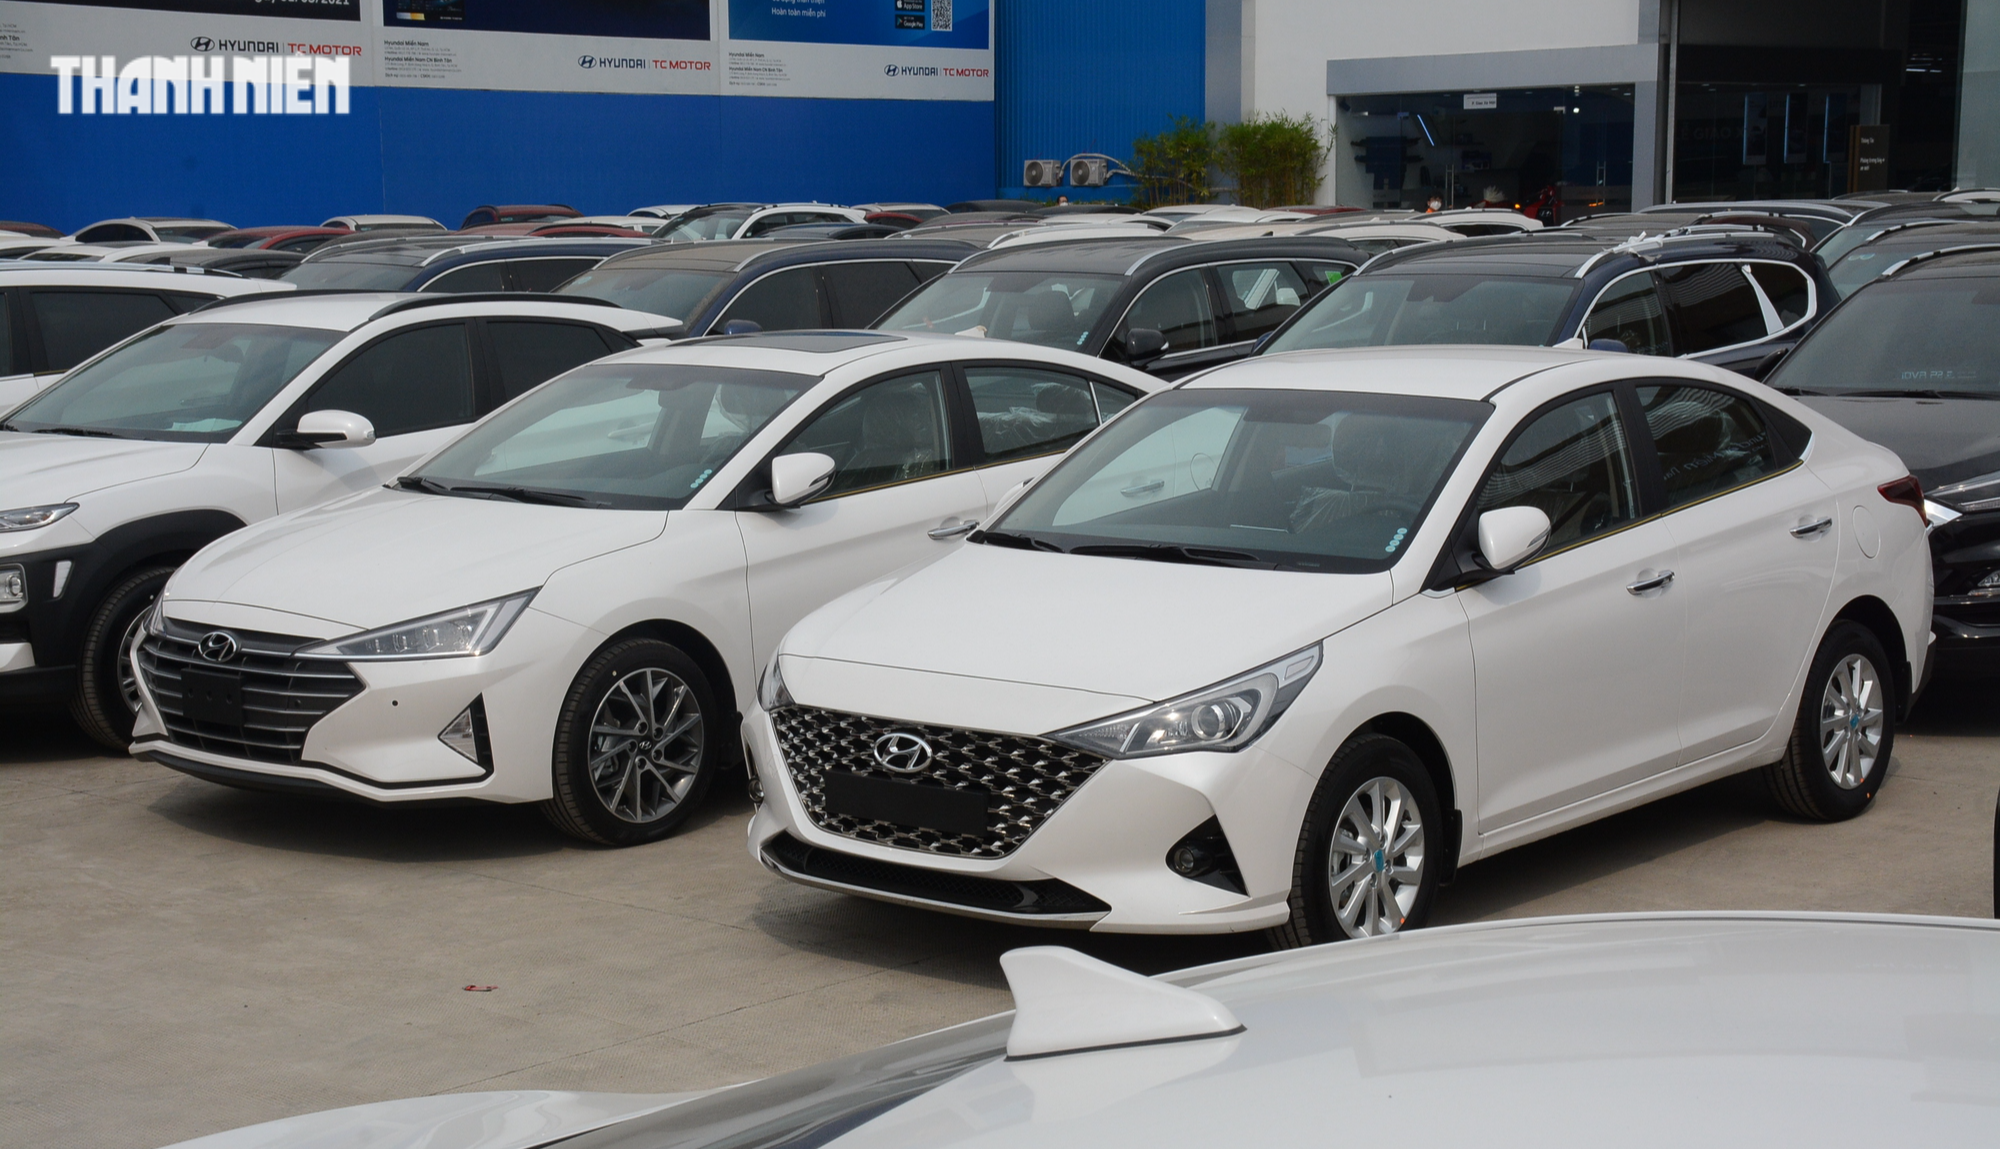 Nhiều mẫu mã được giảm phí trước bạ, doanh số bán ô tô Hyundai vẫn lao dốc - Ảnh 1.